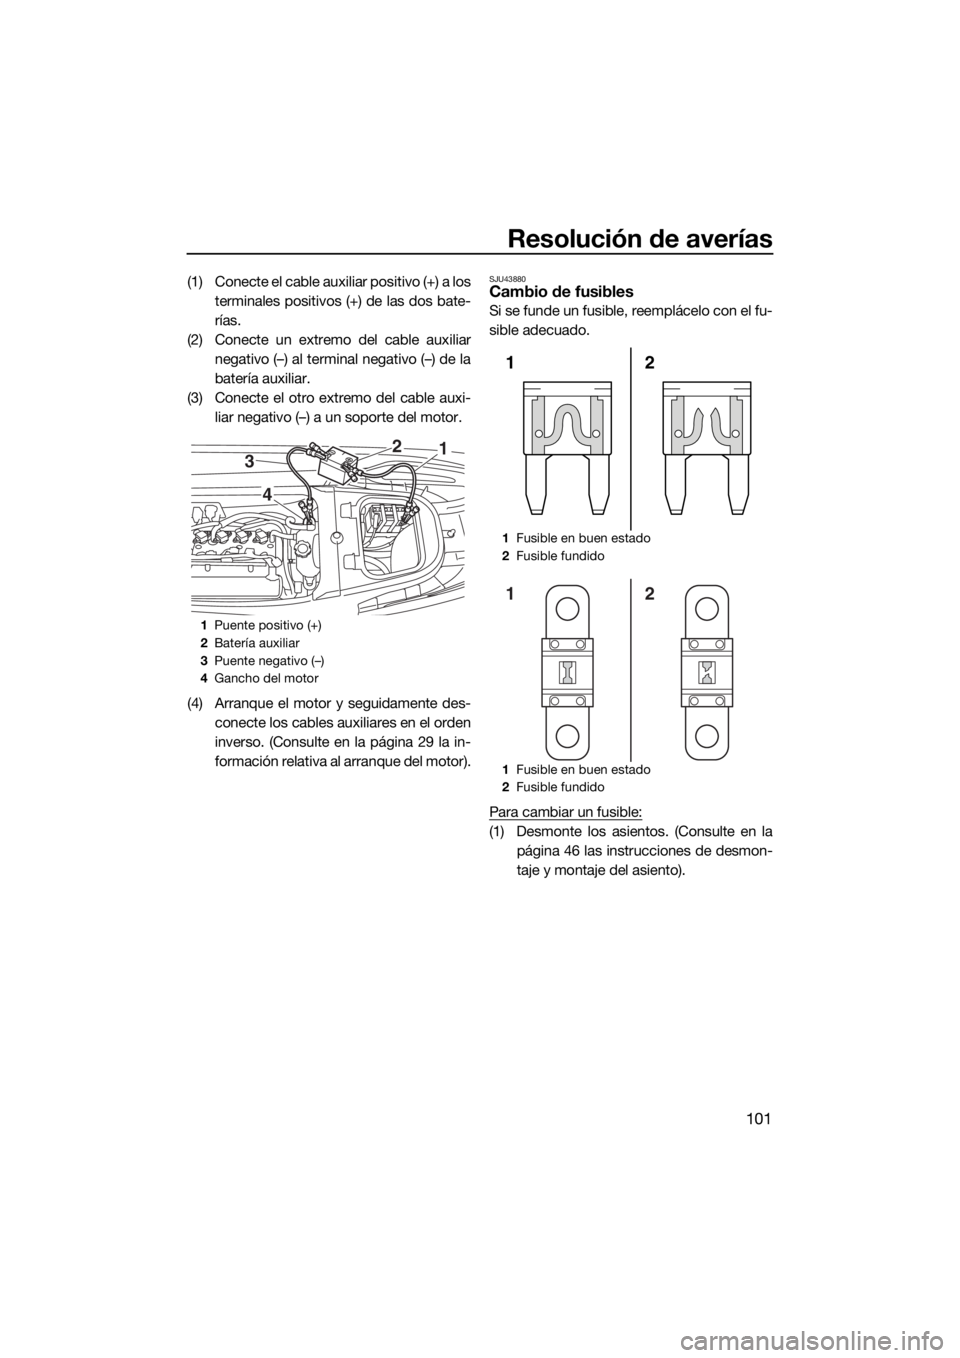 YAMAHA VX CRUISER 2015  Manuale de Empleo (in Spanish) Resolución de averías
101
(1) Conecte el cable auxiliar positivo (+) a los
terminales positivos (+) de las dos bate-
rías.
(2) Conecte un extremo del cable auxiliar
negativo (–) al terminal negat